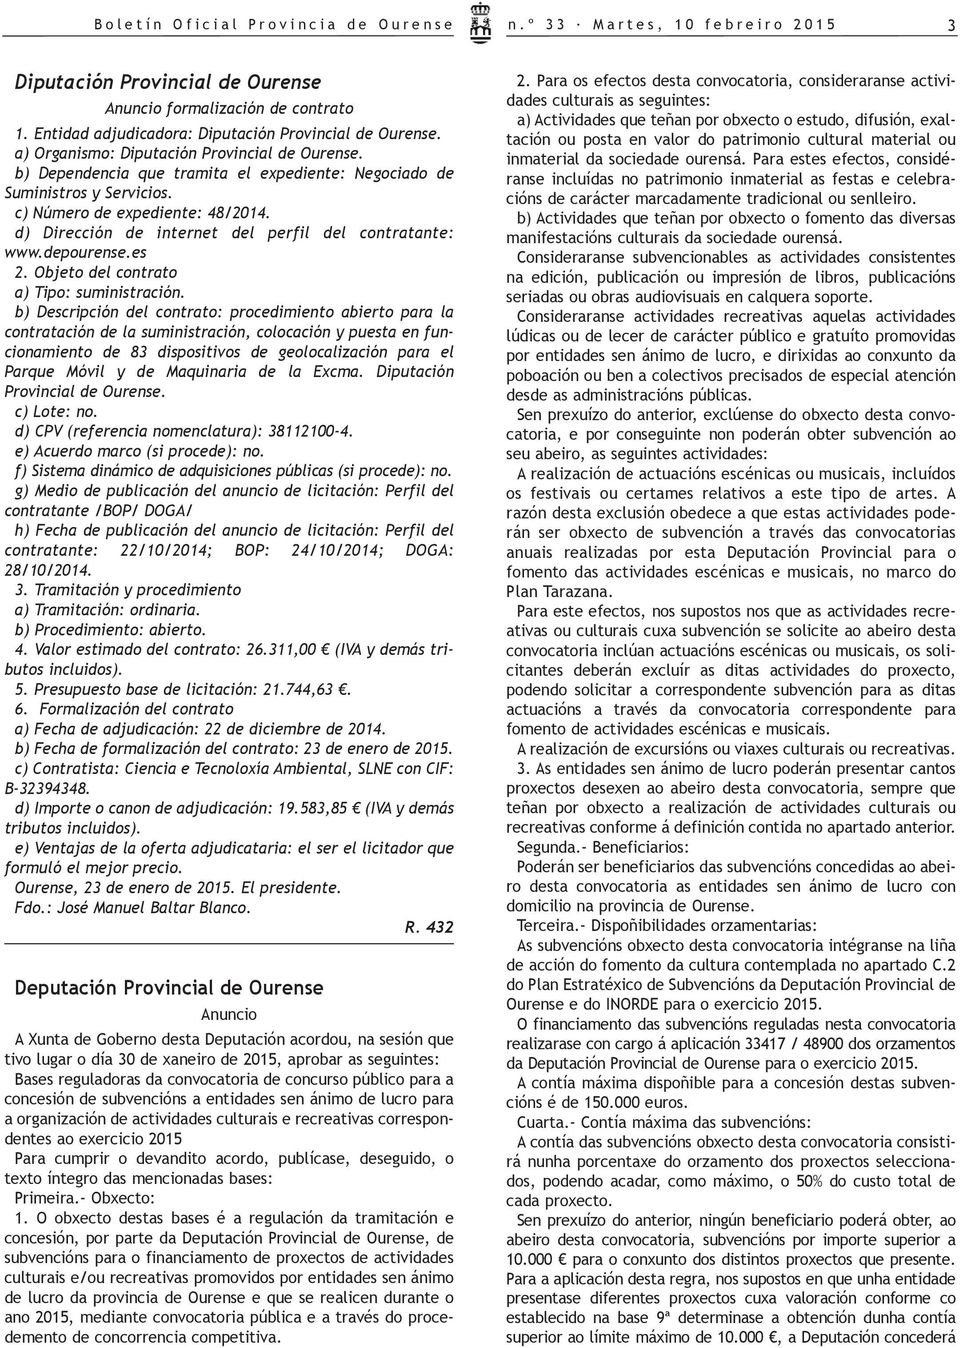 c) Número de expediente: 48/2014. d) Dirección de internet del perfil del contratante: www.depourense.es 2. Objeto del contrato a) Tipo: suministración.